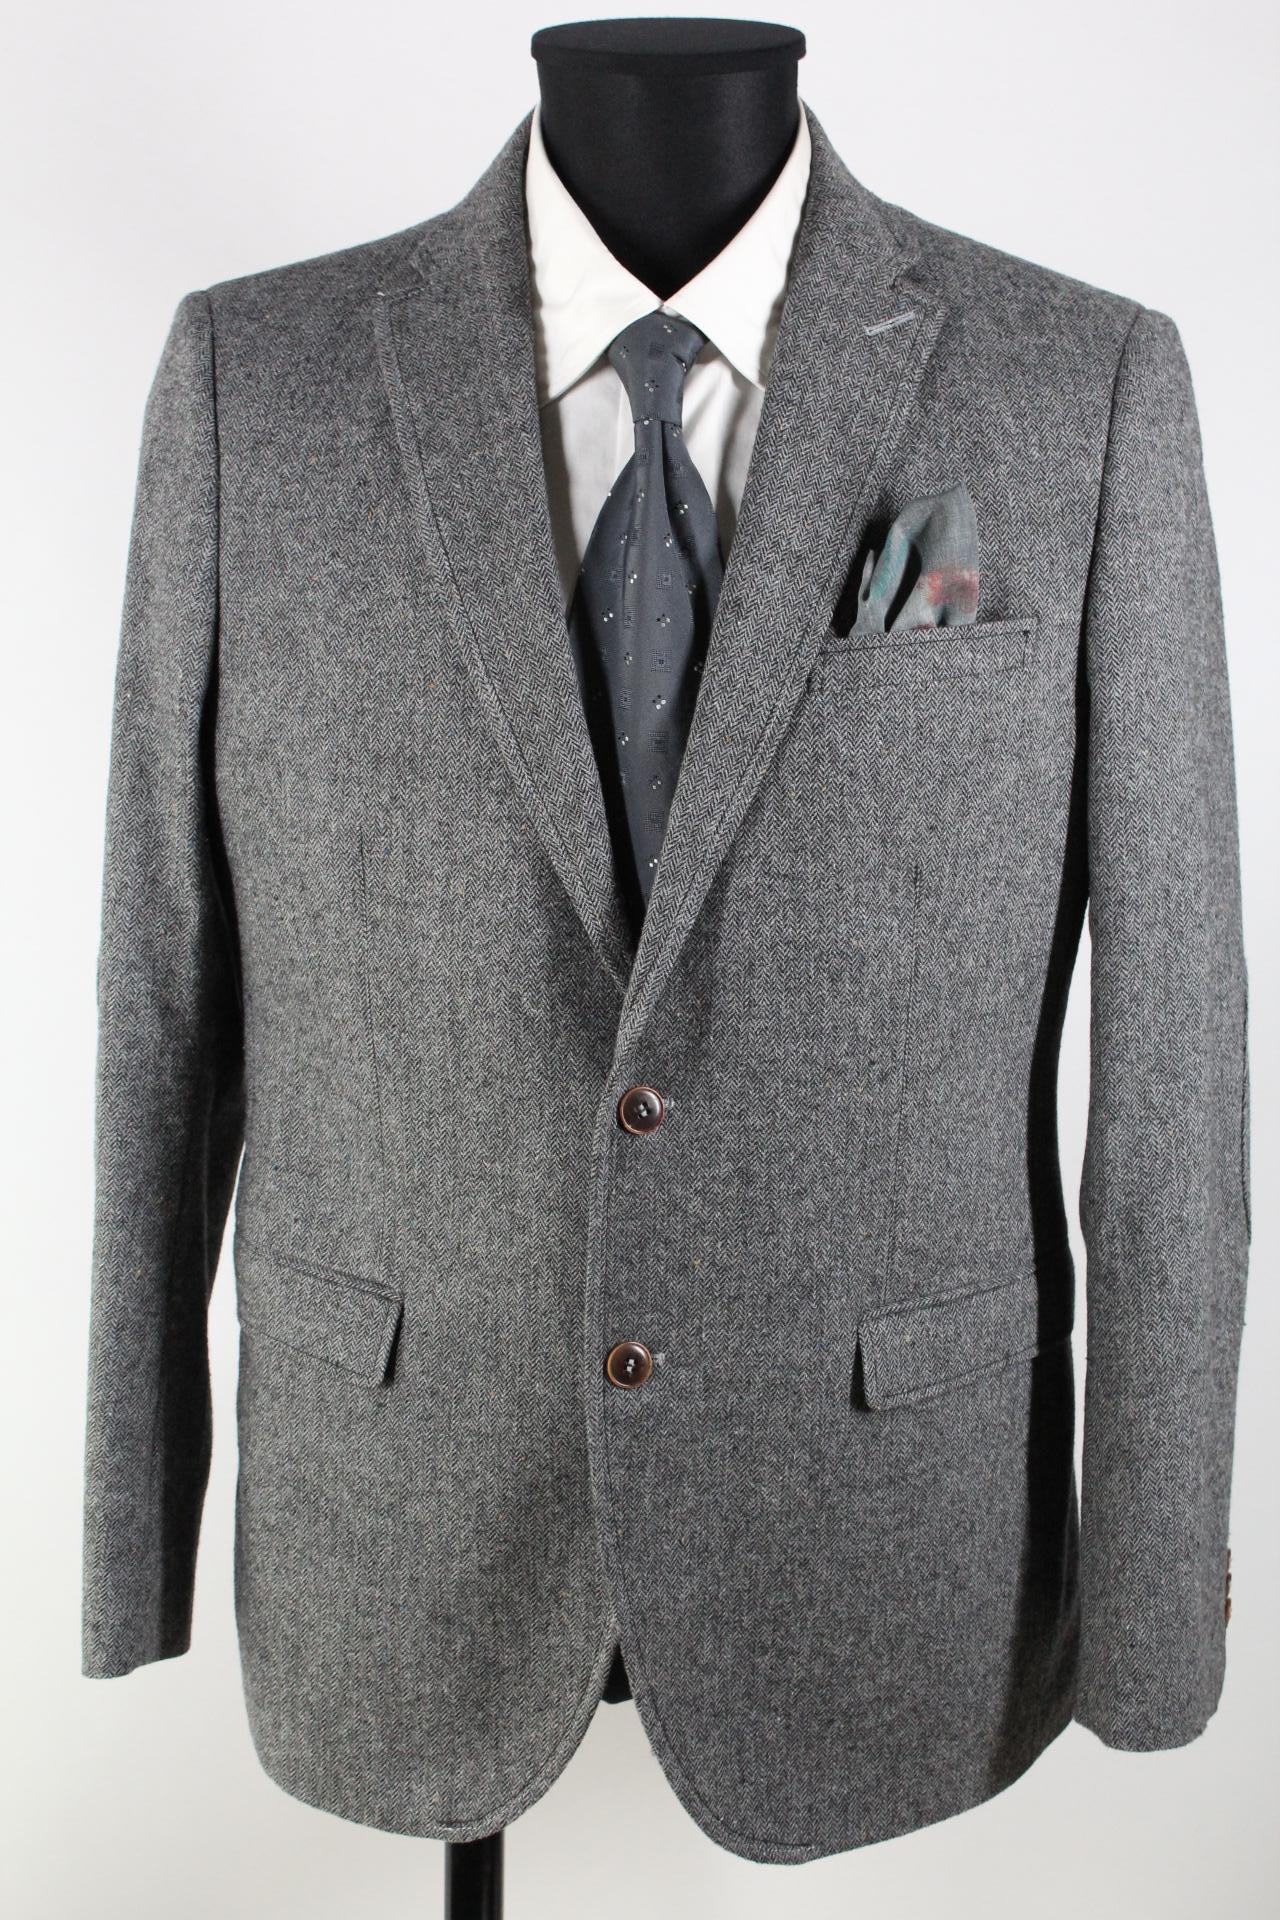 Club of Gents Tweed-Sakko grau, schwarz,  braun, blau Größe 50